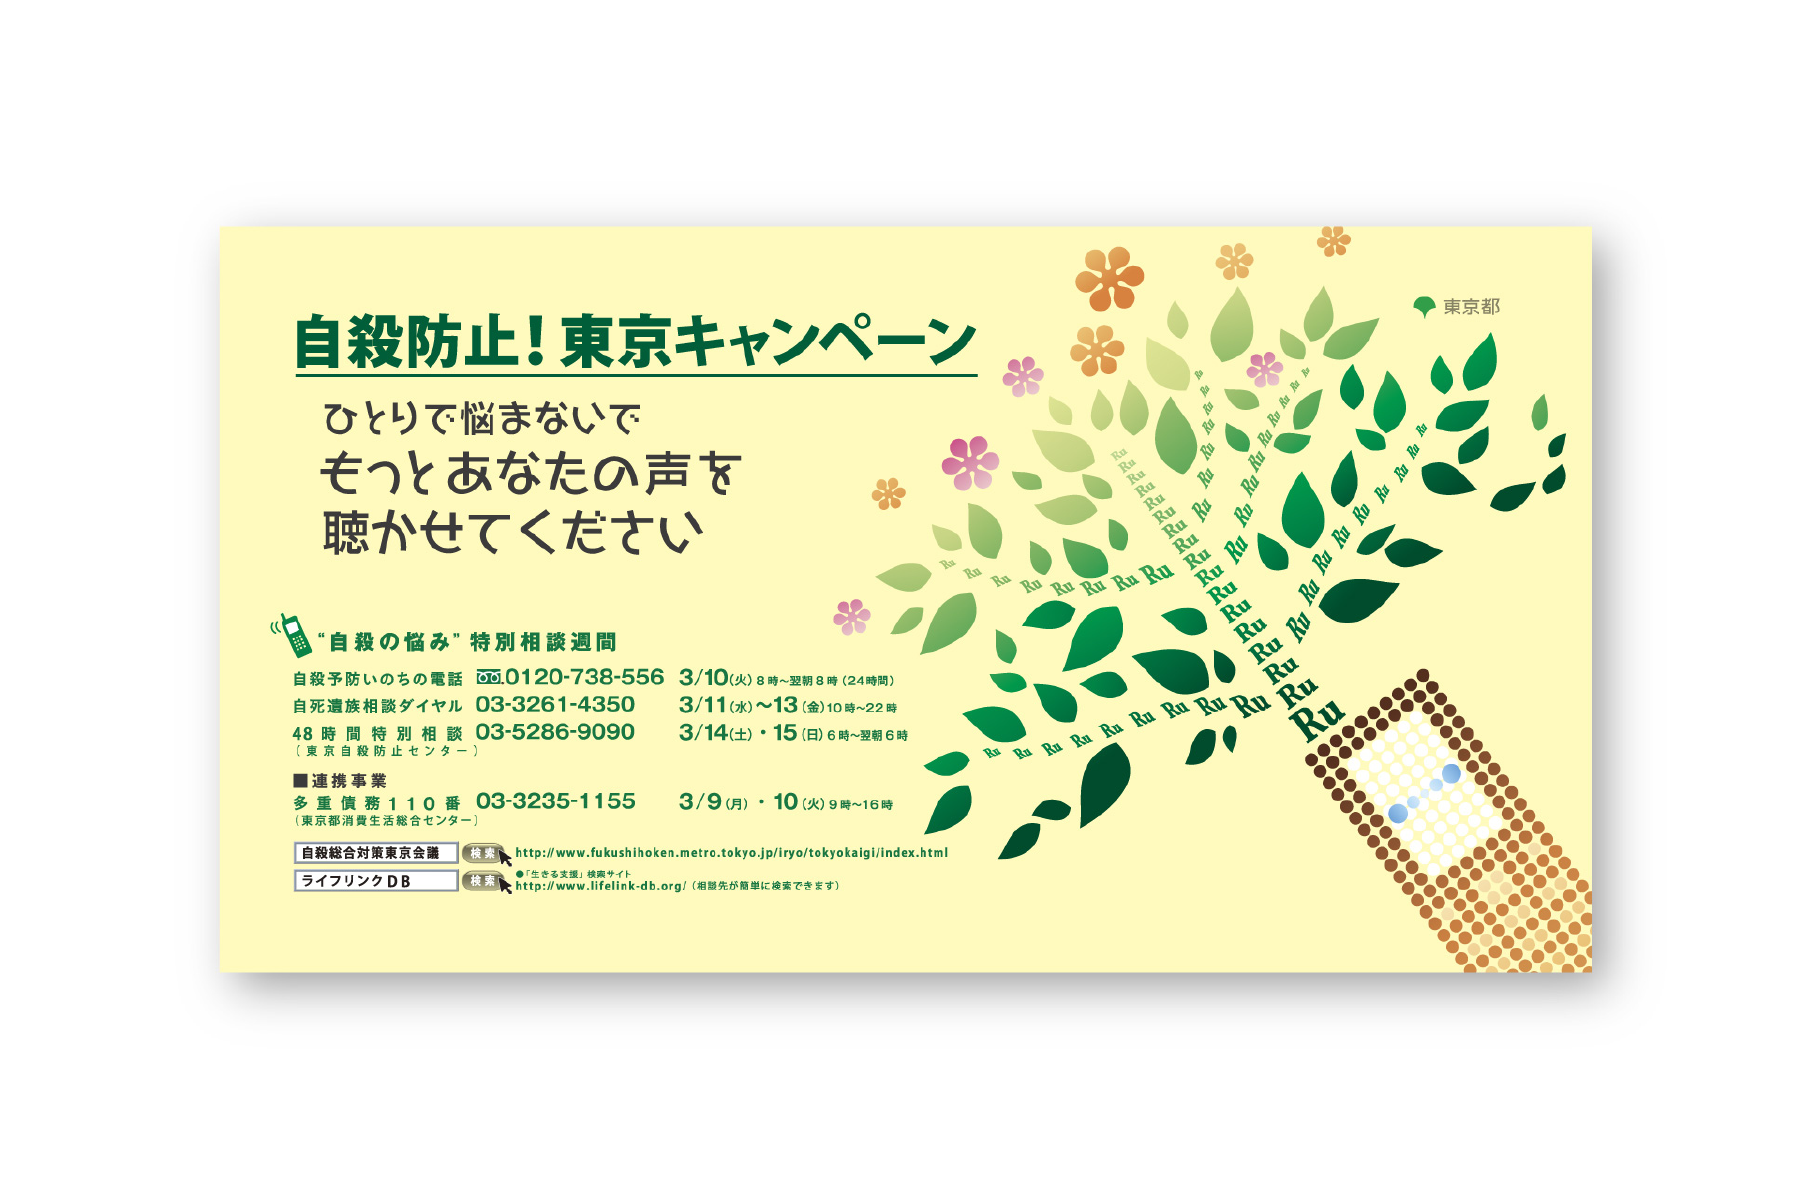 Public notice “Tokyo Campaign Poster”